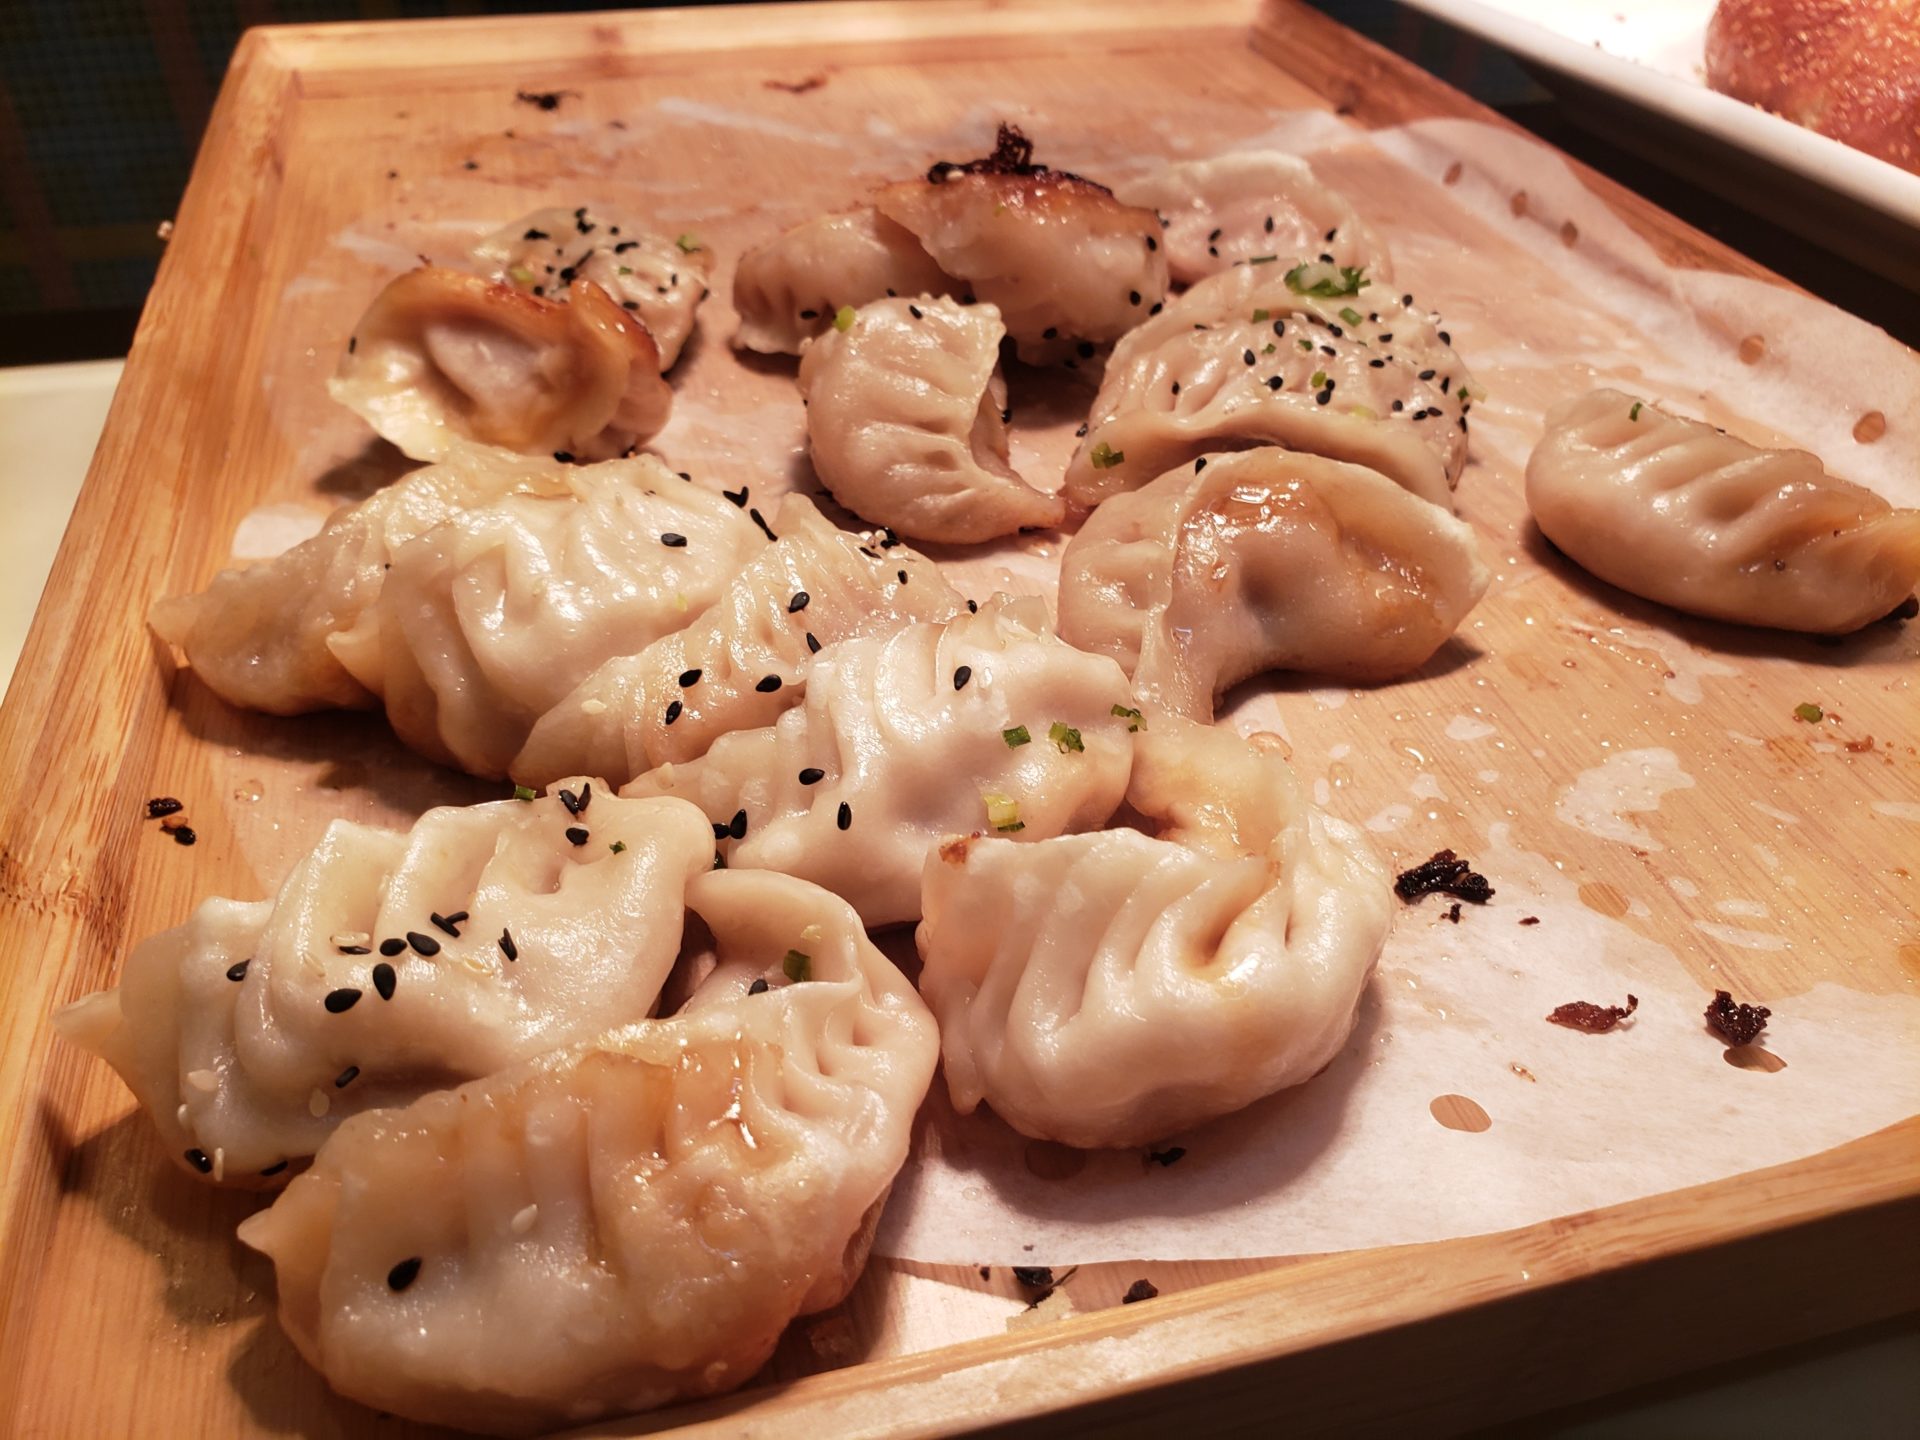 a plate of dumplings